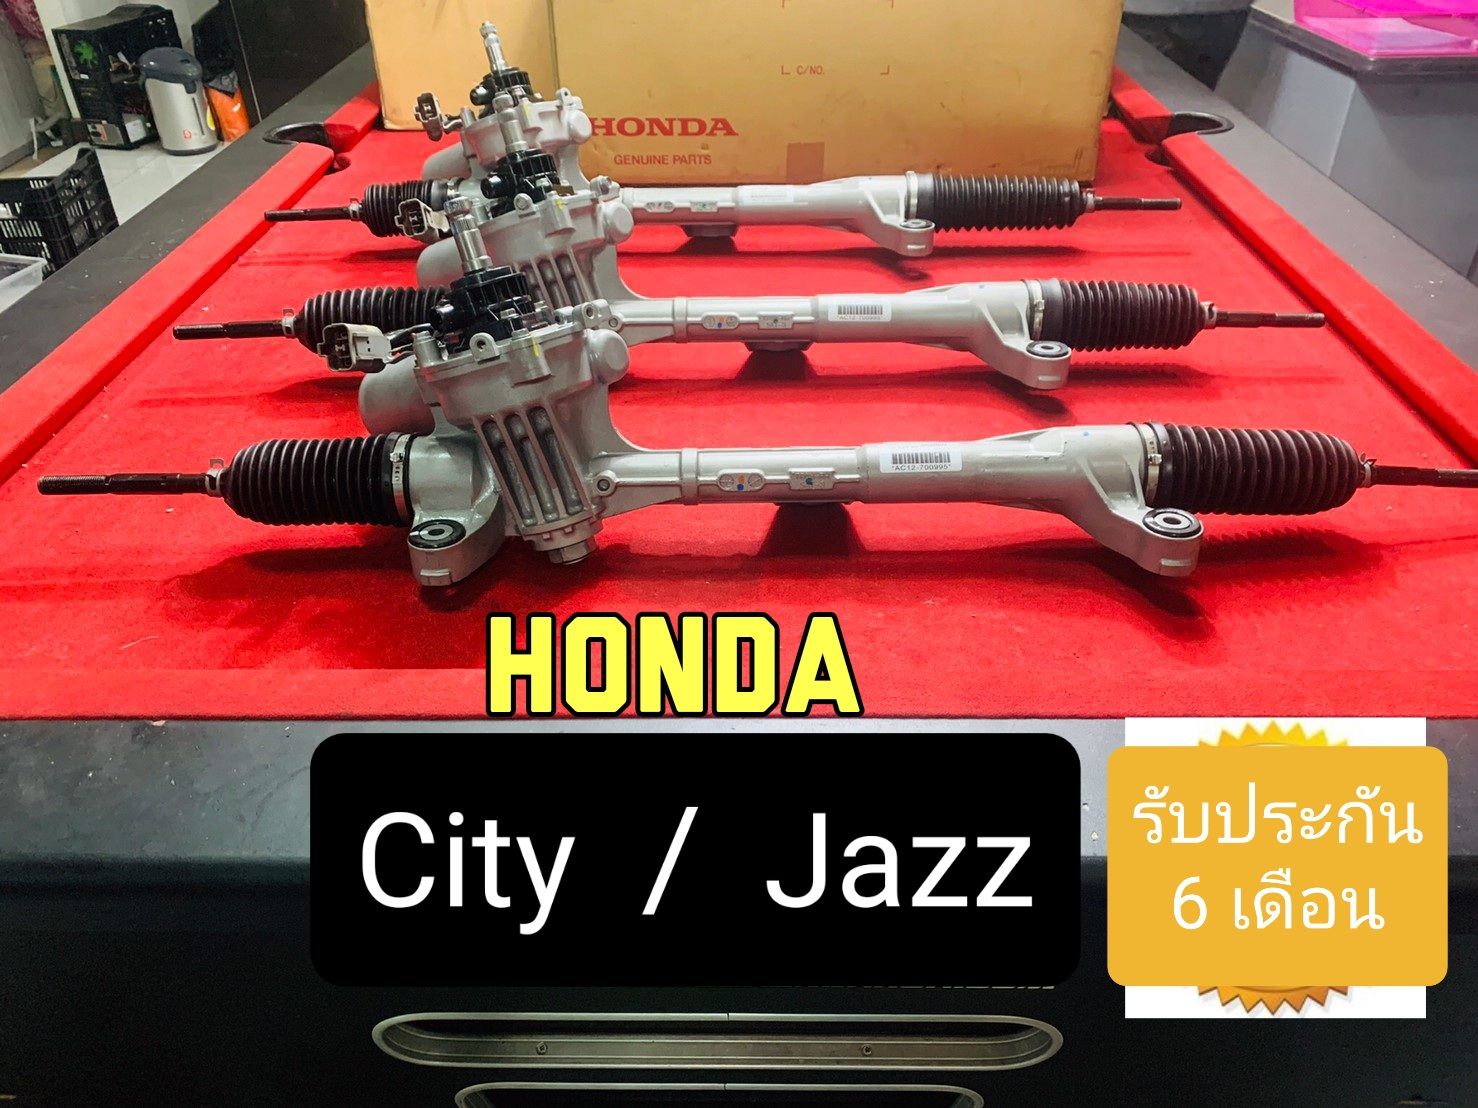 แร็คพวงมาลัยไฟฟ้า Honda Jazz&City 08-13 มือสองแท้สภาพ90%รับประกัน 6 เดือน (ไม่จำกัดระยะทาง)